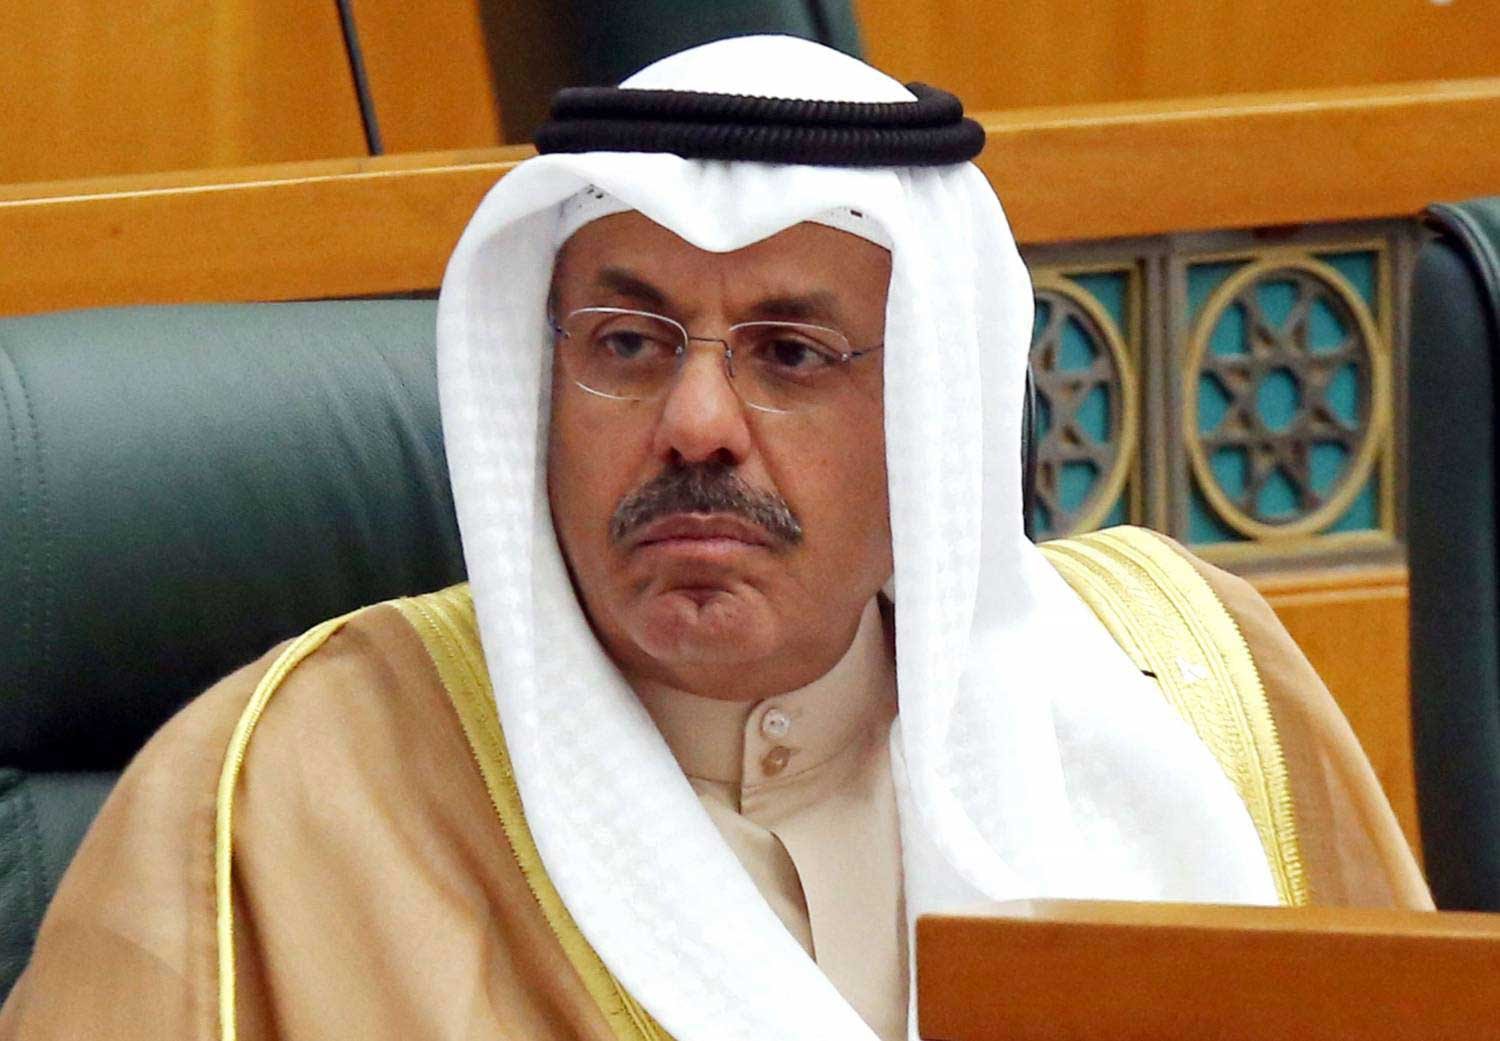 اعتقال نشطاء يجهض تطلعات البدون في الكويت لعهد جديد ينصفهم